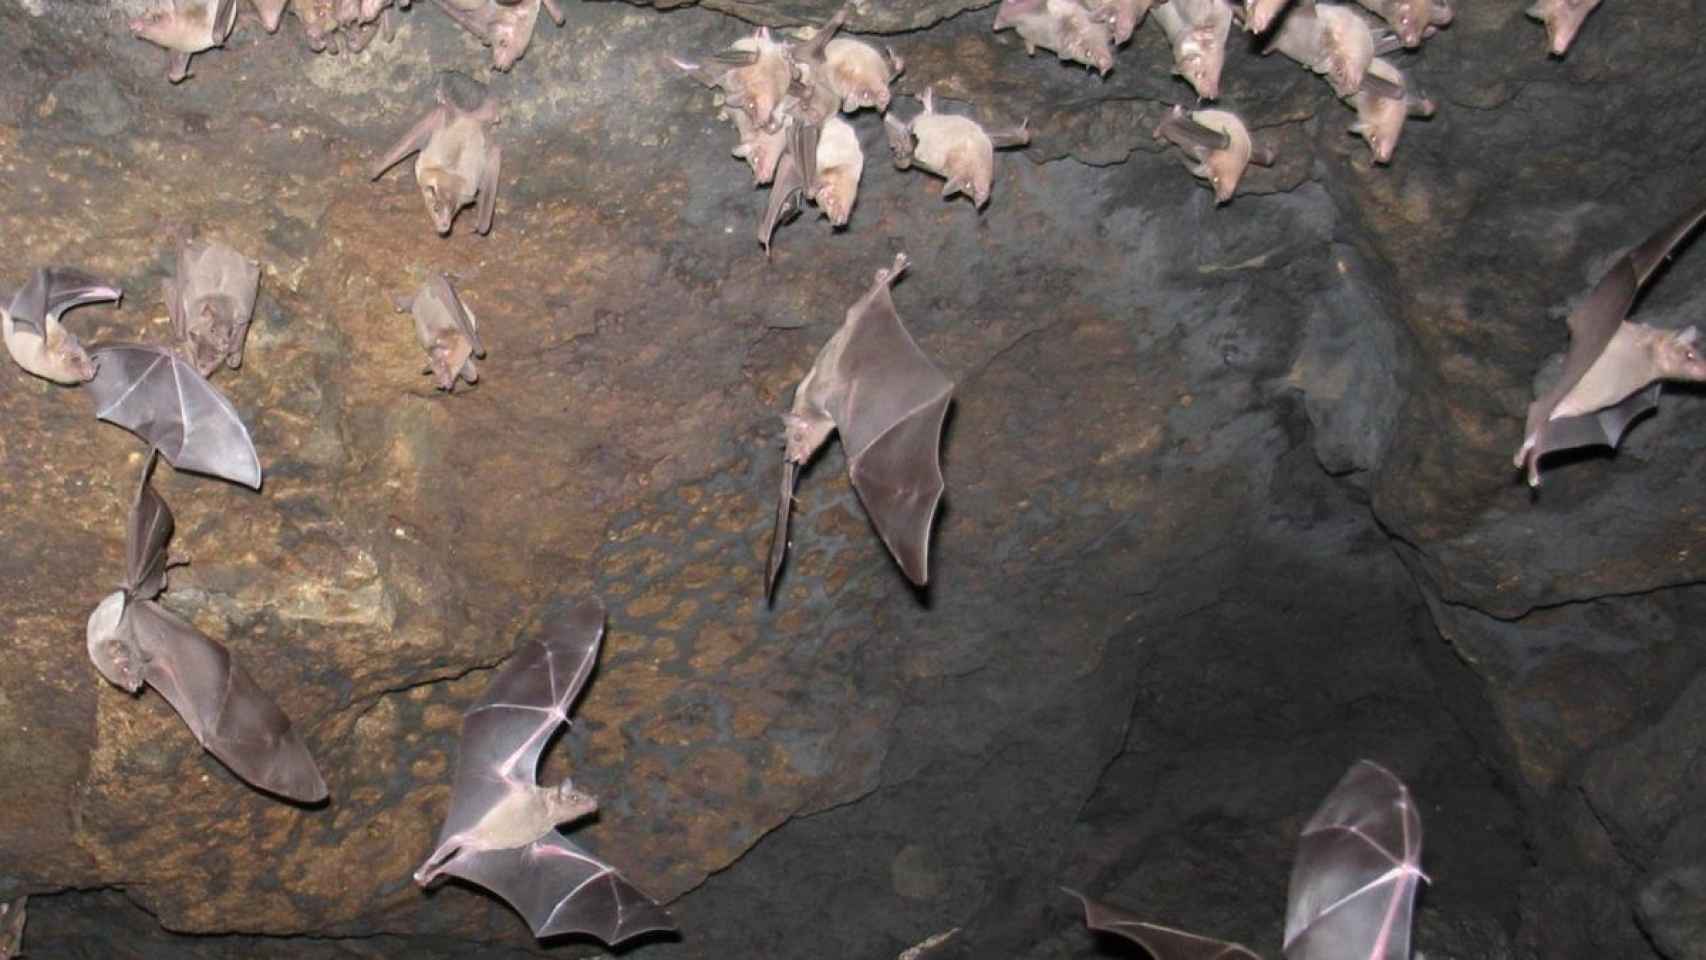 Numerosos ejemplares de murciélago revolotean por la cavidad